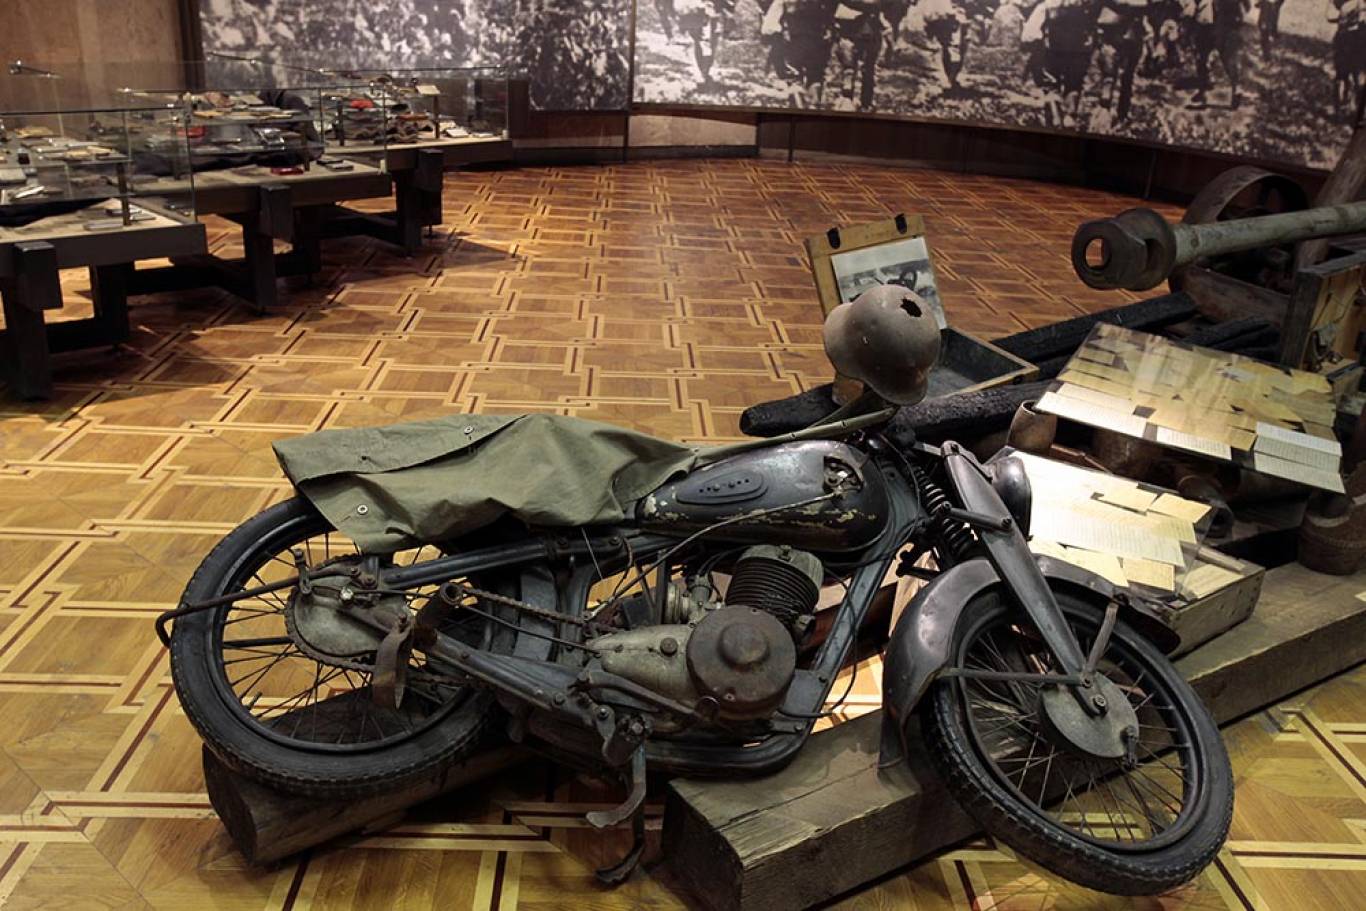 музей войны в киеве